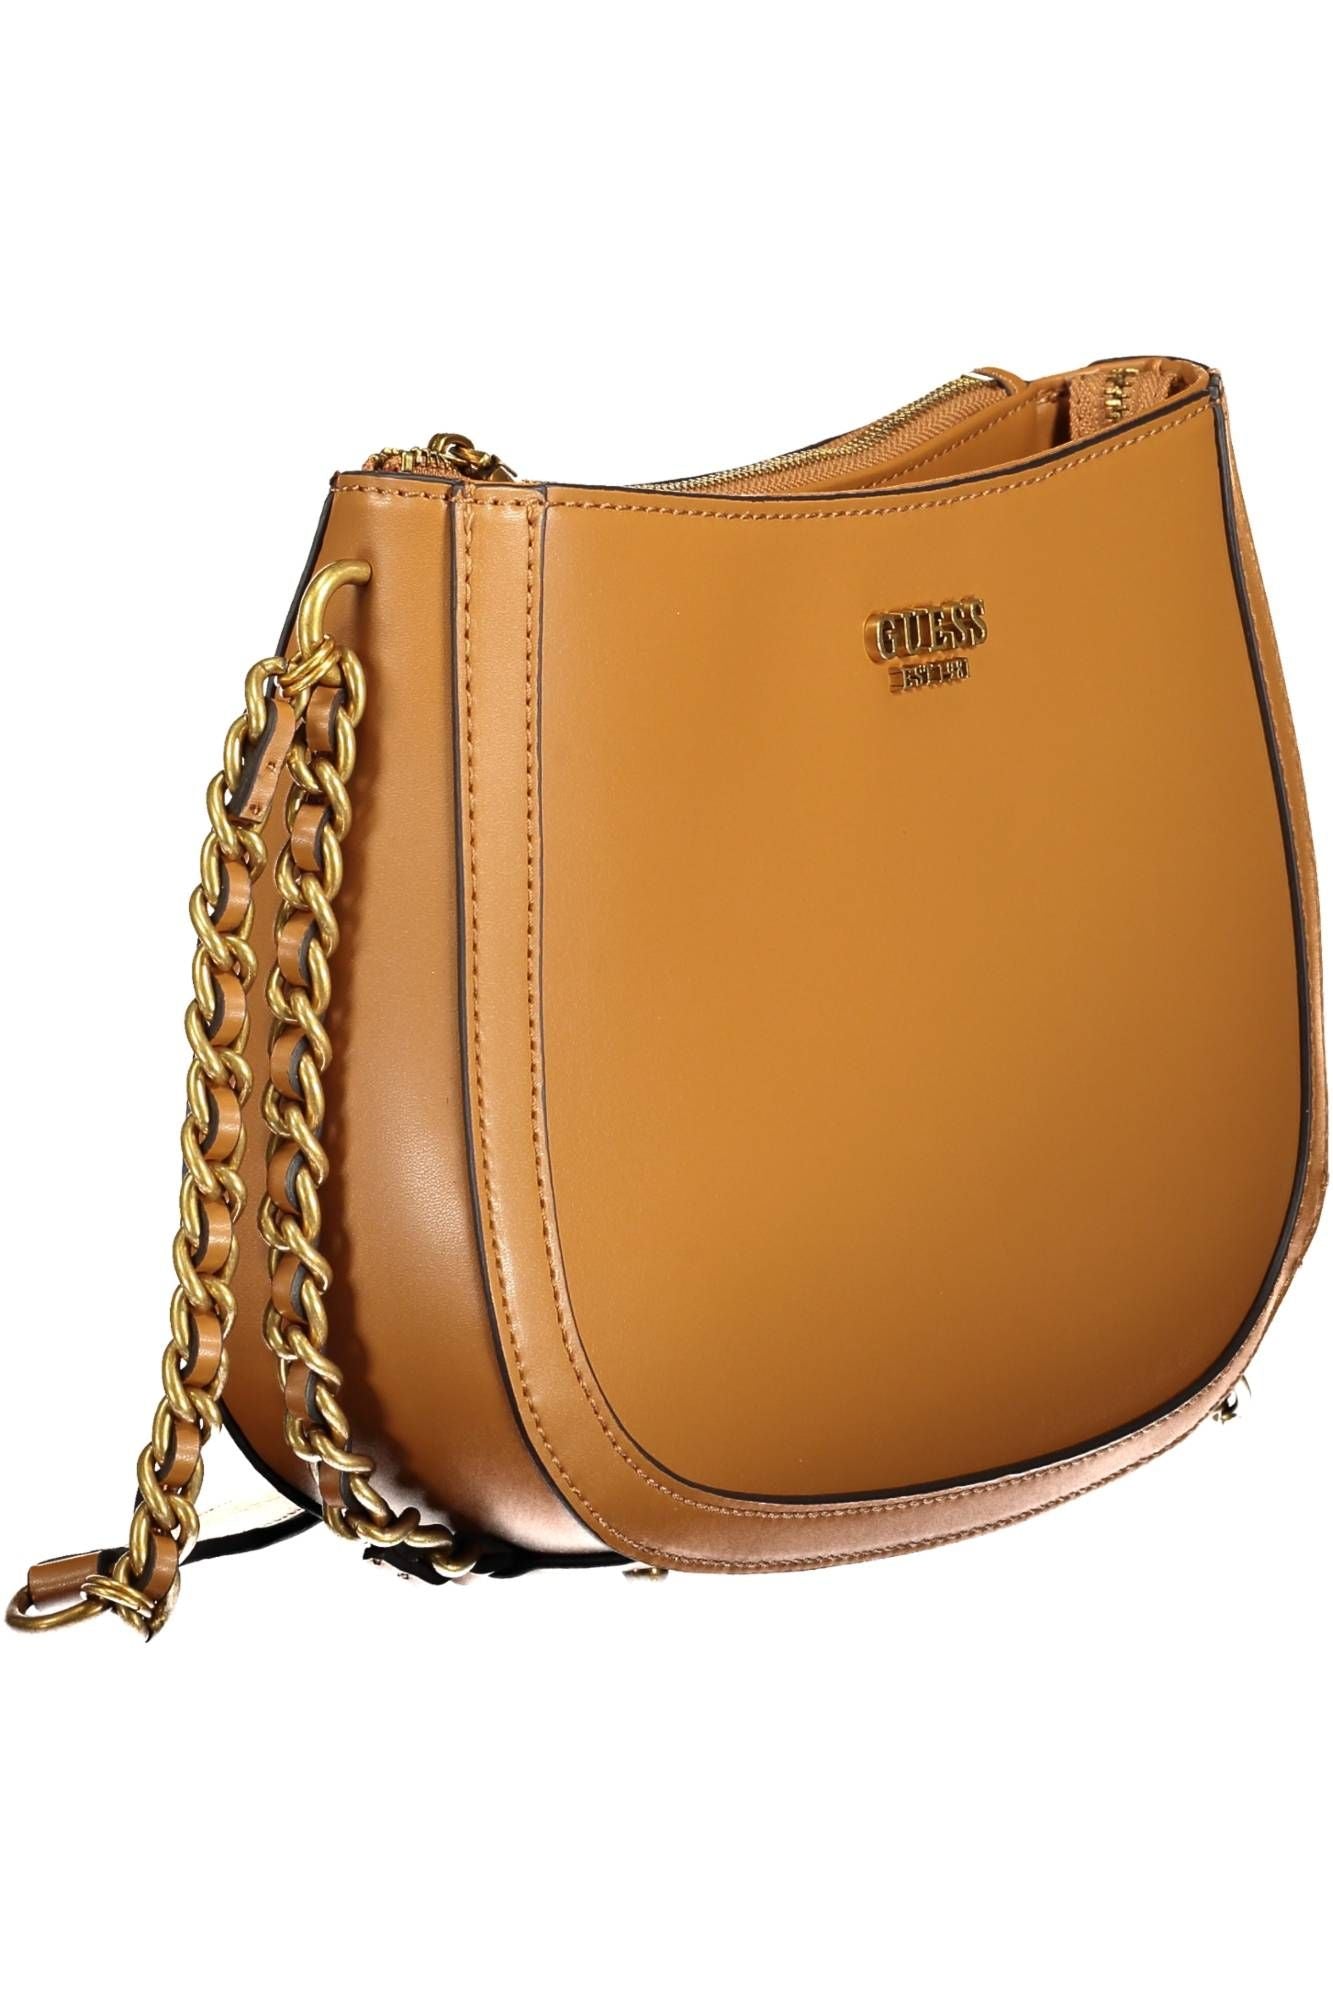 Elegant Brown Shoulder Bag with Contrasting Details